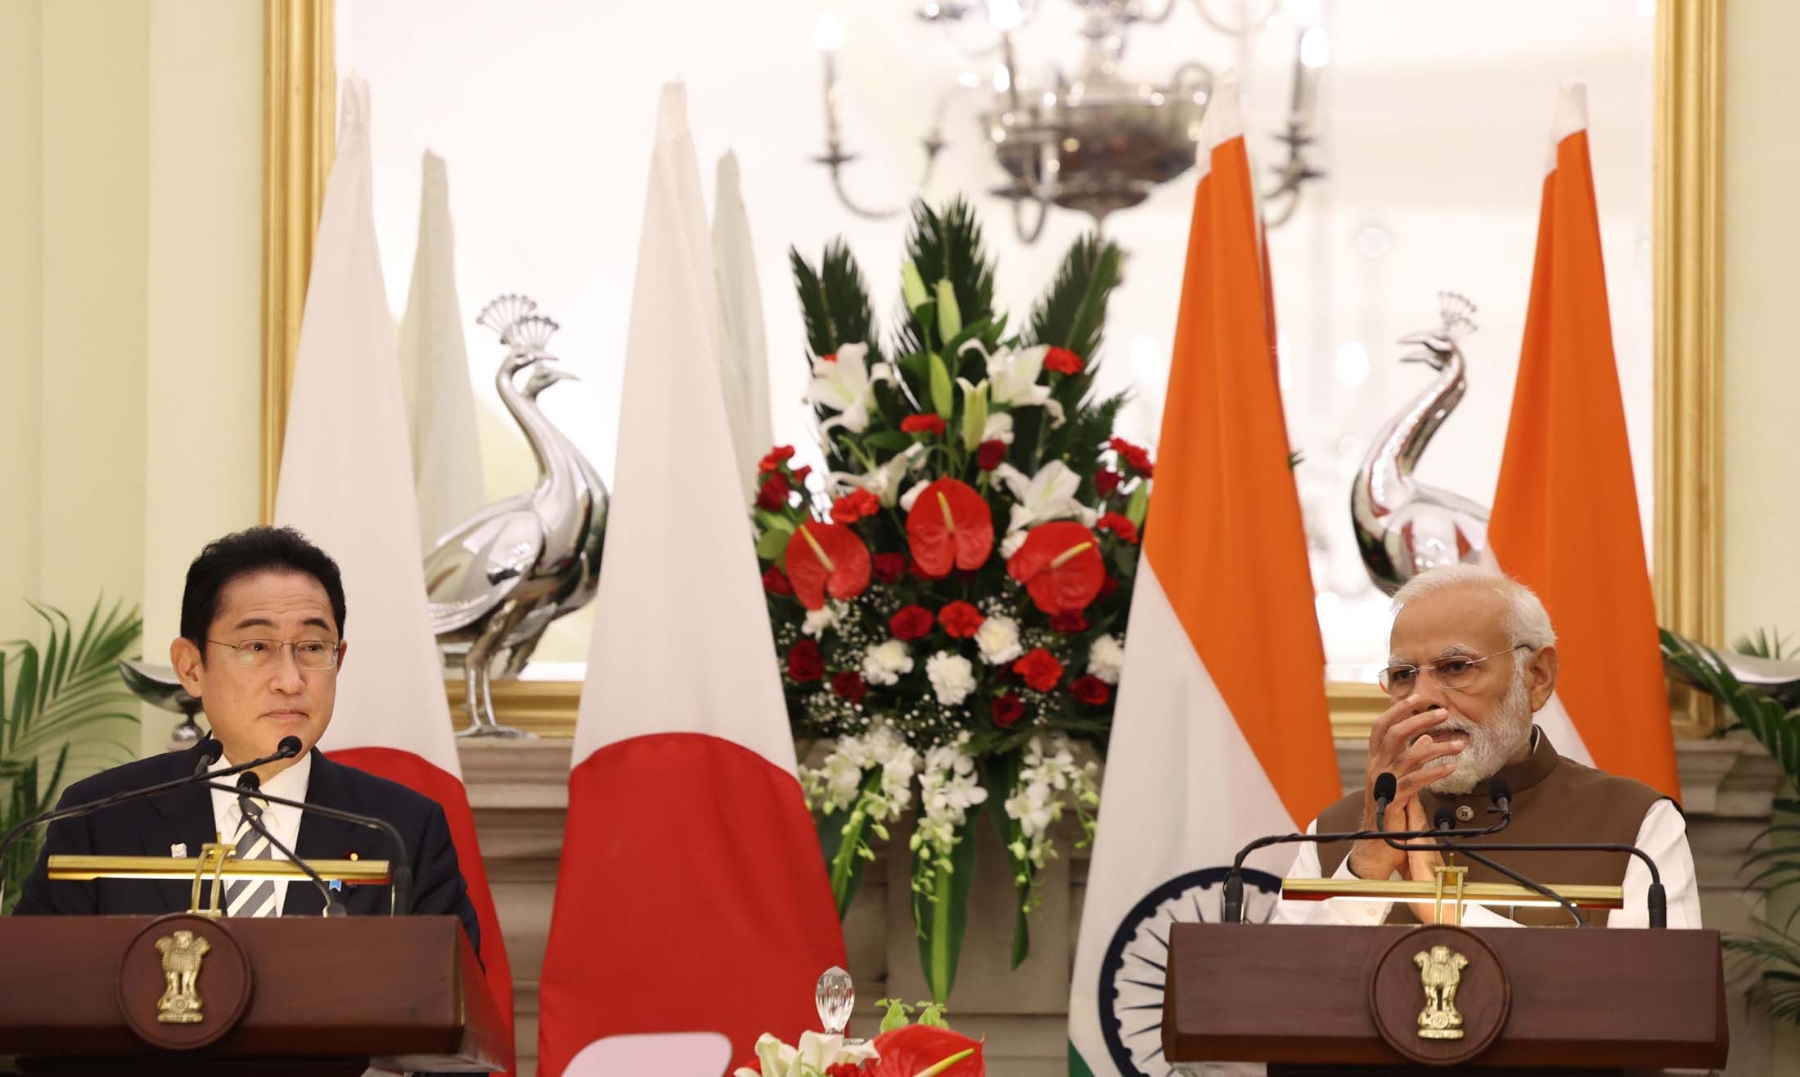 नई दिल्ली में सोमवार 20 मार्च को हैदराबाद हाउस में संयुक्त संवाददाता सम्मेलन को संबोधित करते प्रधानमंत्री नरेन्द्र मोदीऔर जापान के प्रधानमंत्री फुमियो किशिदा। हिन्दुस्थान समाचार/ फोटो गणेश बिष्ट